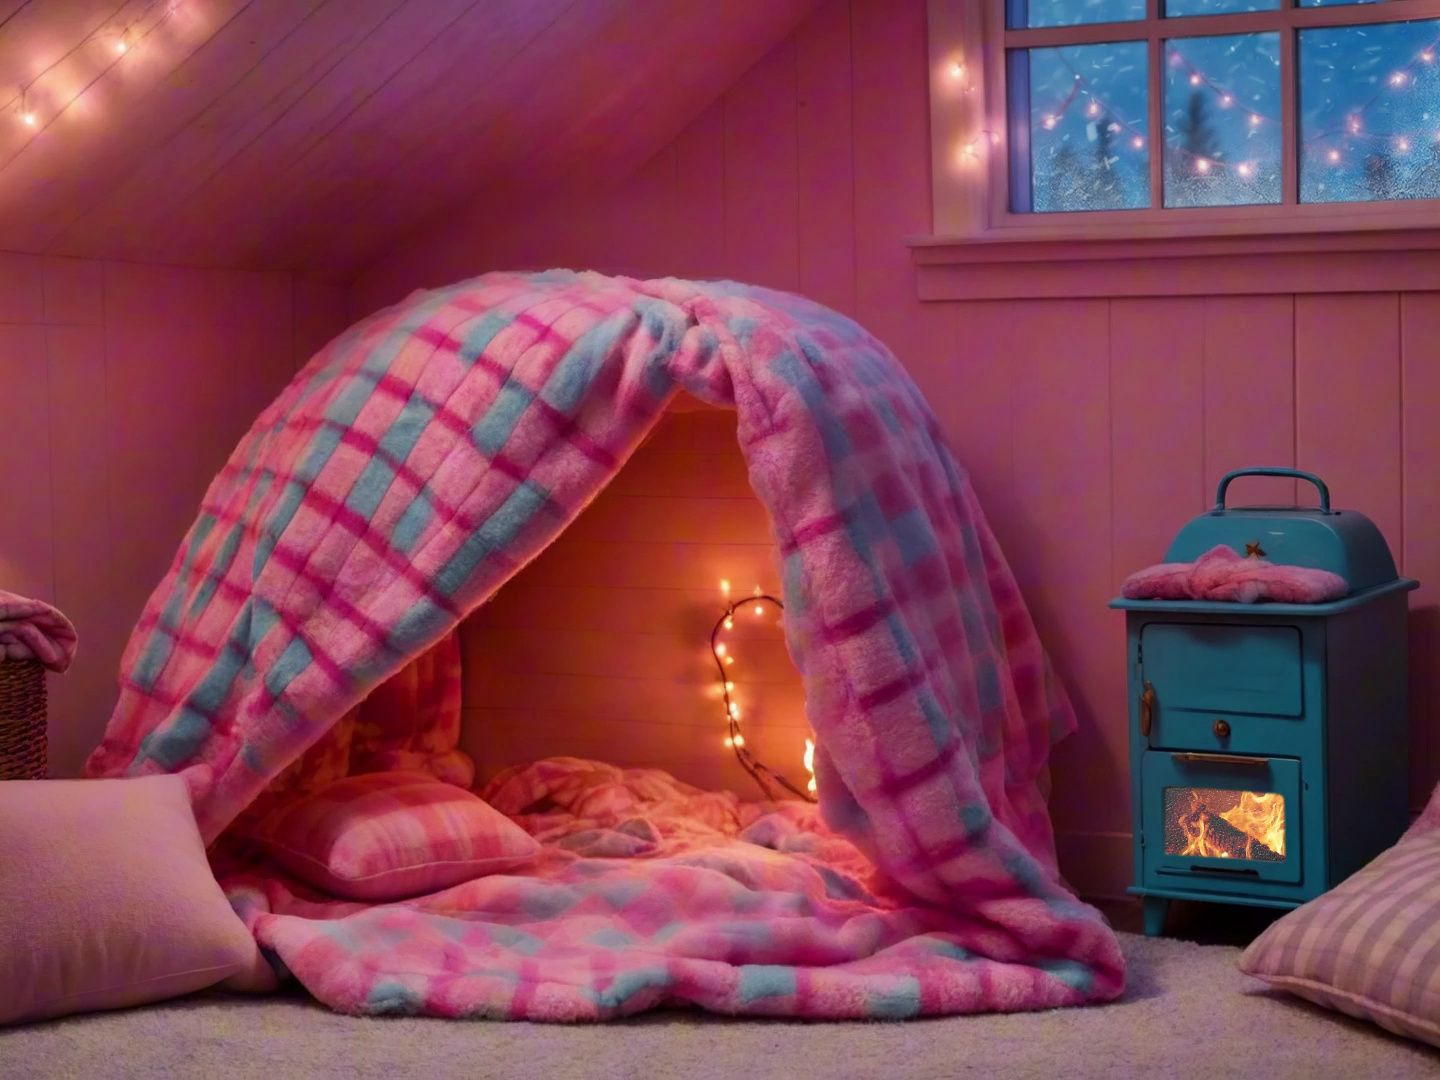 暴风雪夜，在一个舒适的小窝里入睡，炉火声，风雪声，助眠氛围